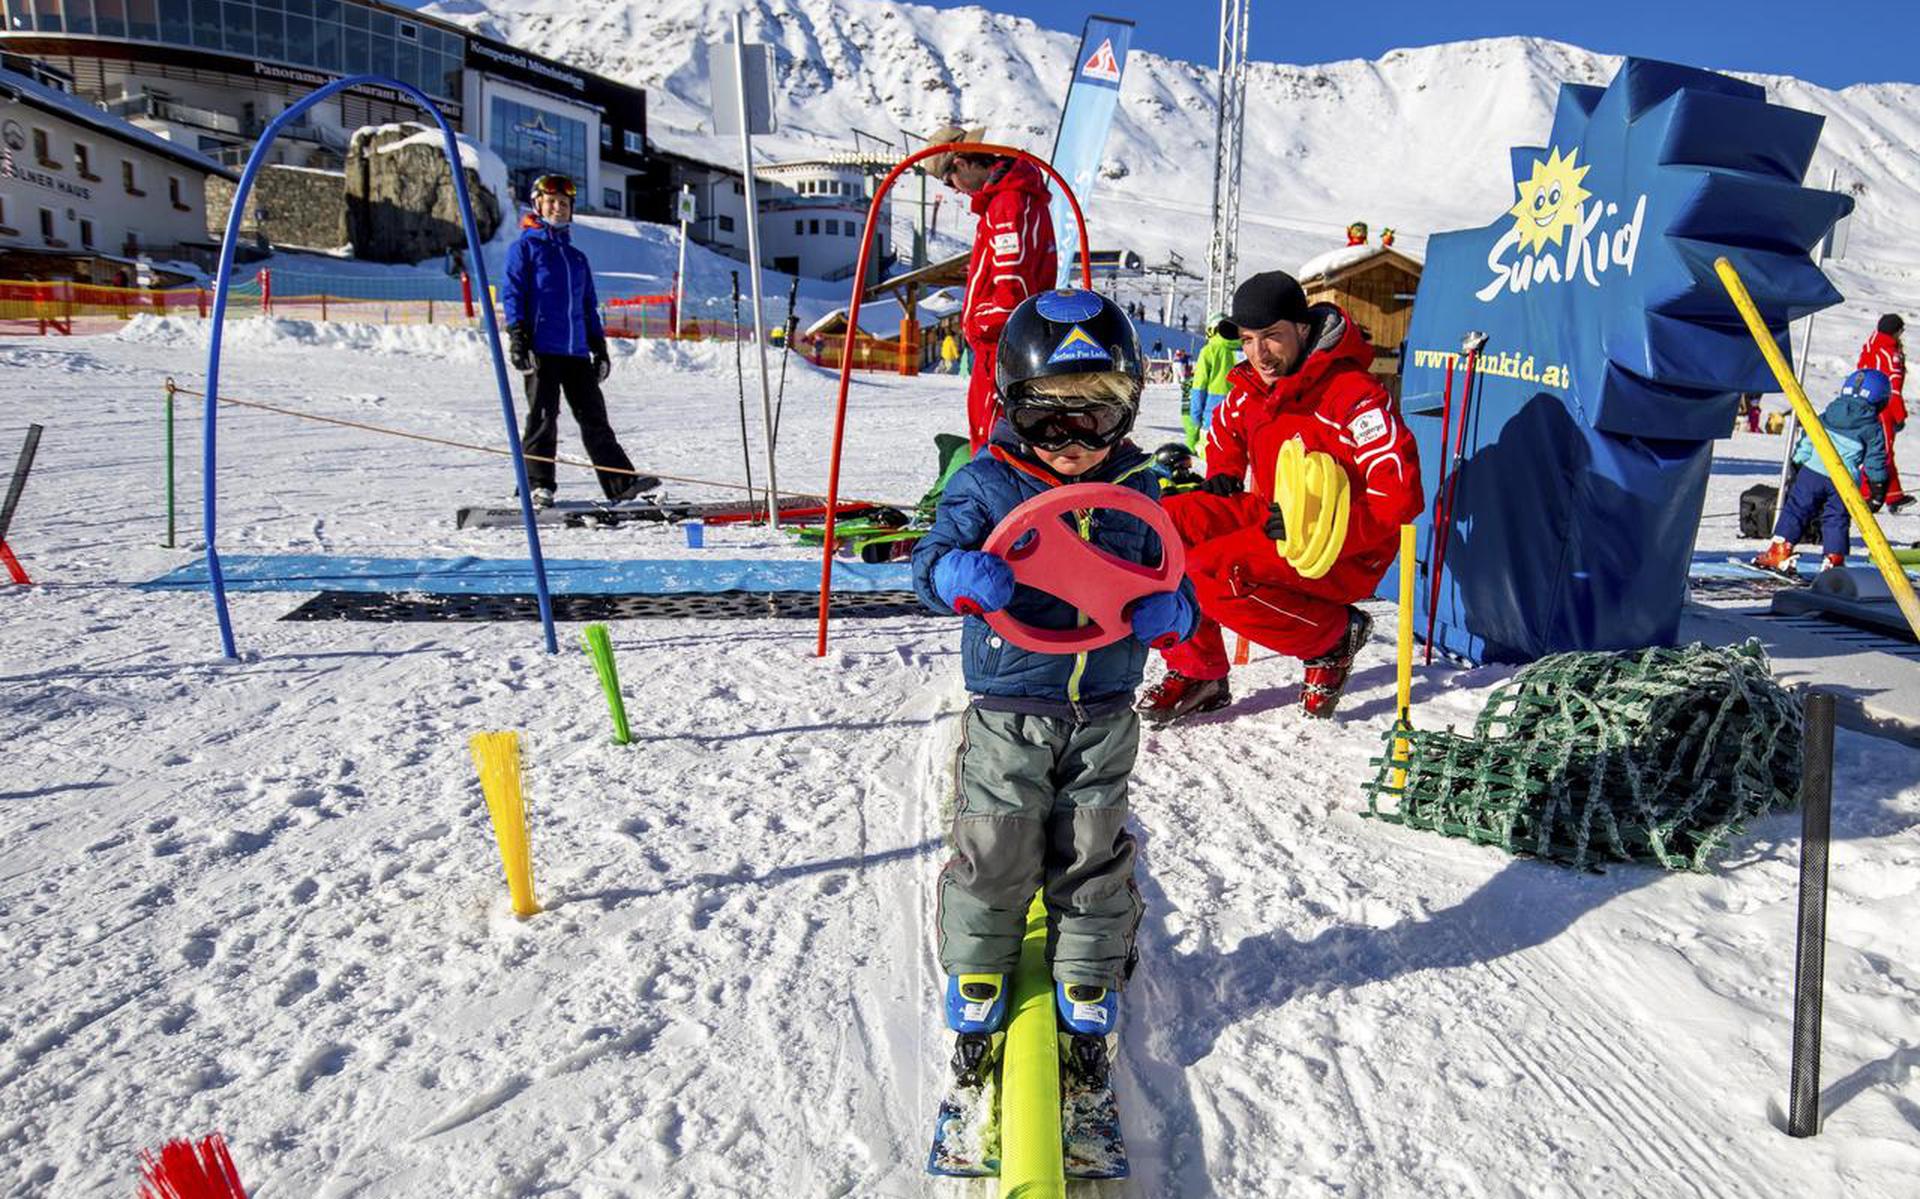 Voor eerst met je kind op wintersport - Dagblad van het Noorden